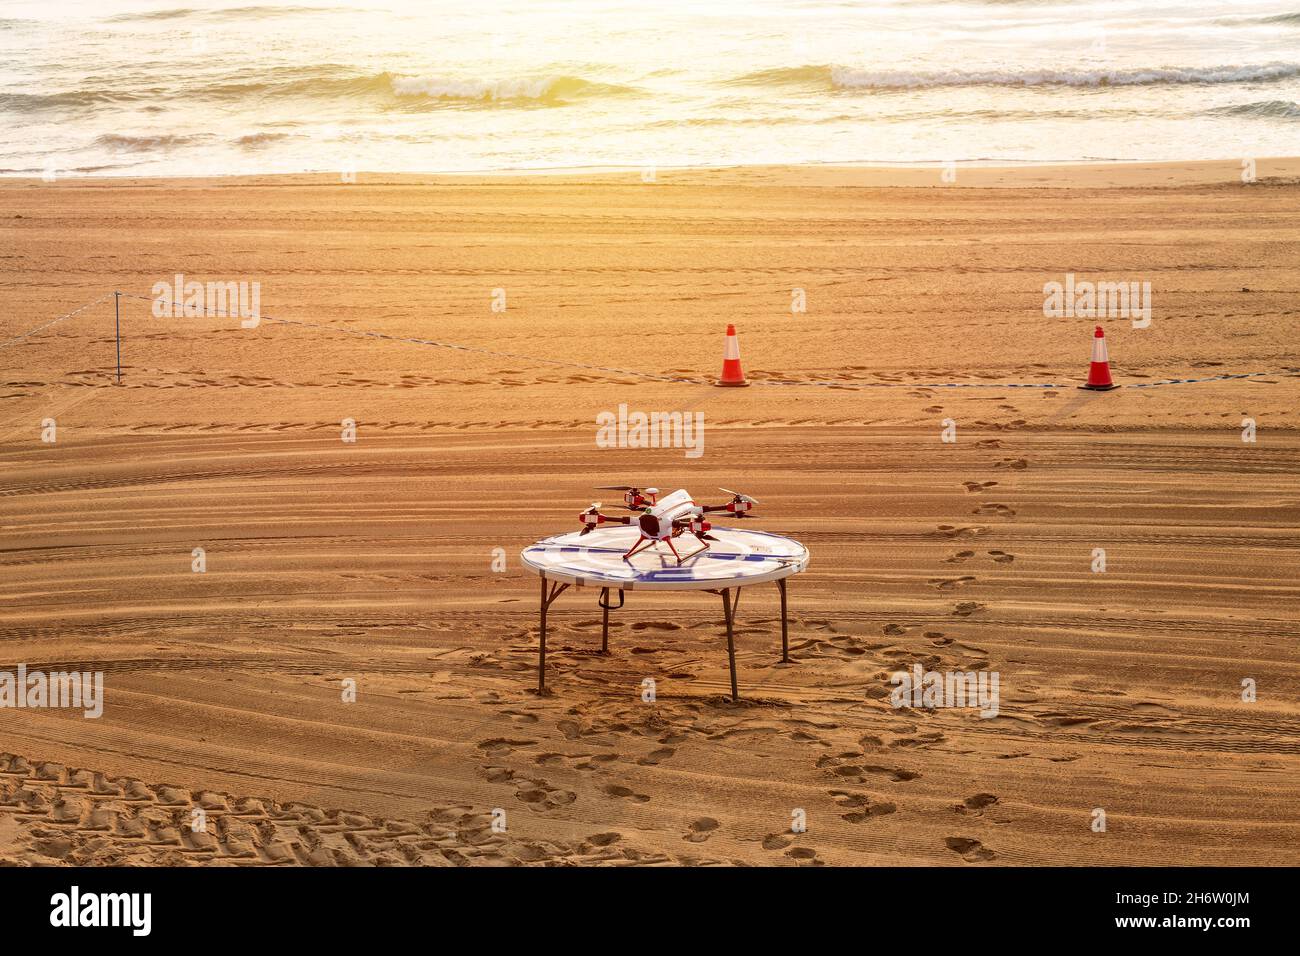 plate-forme de décollage et drone prêts pour la surveillance de plage Banque D'Images